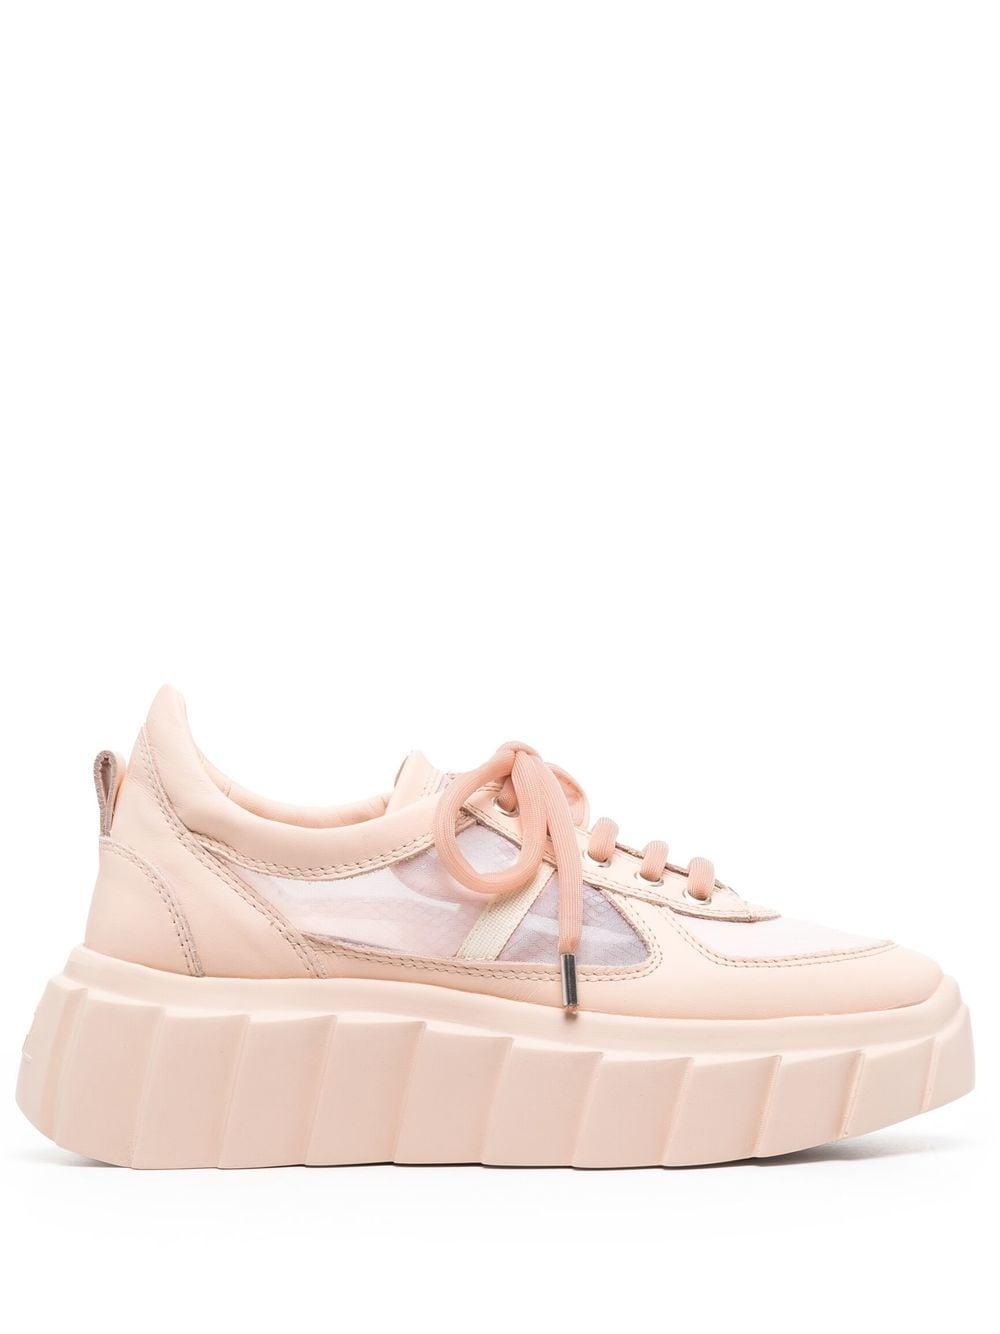 Agl Attilio Giusti Leombruni Blondie Grid Platform Sneakers in Pink | Lyst